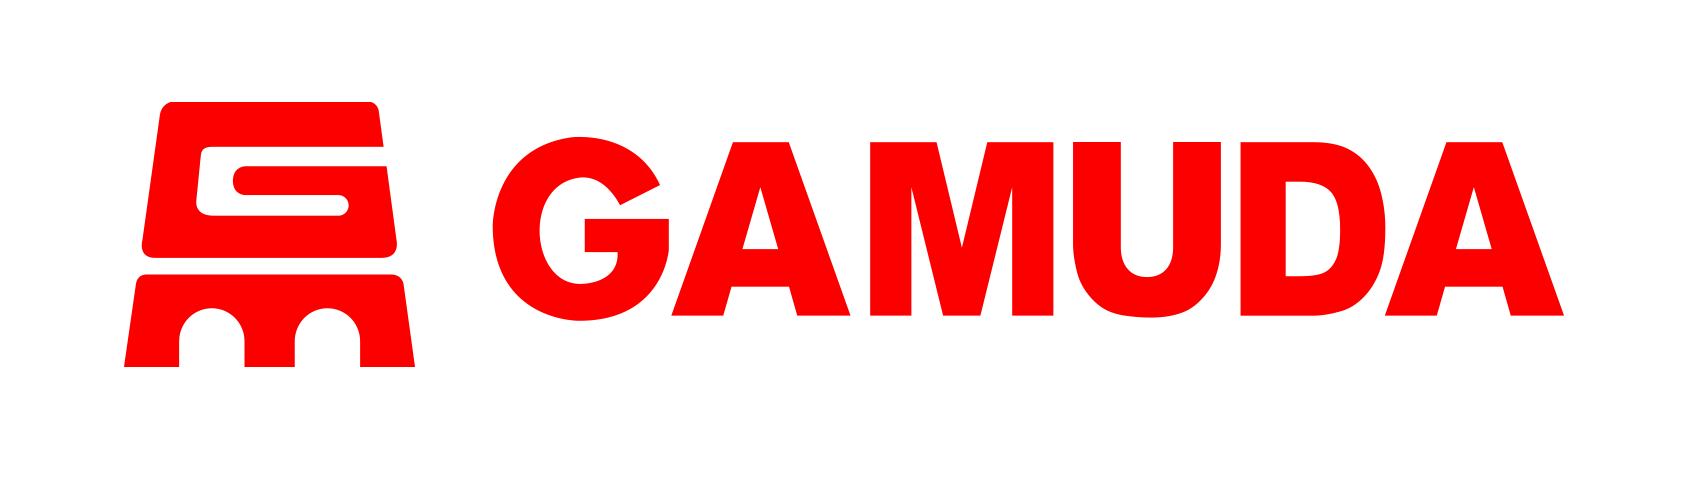 logo gamuda - Elysian Lò Lu Quận 9 Thủ Đức